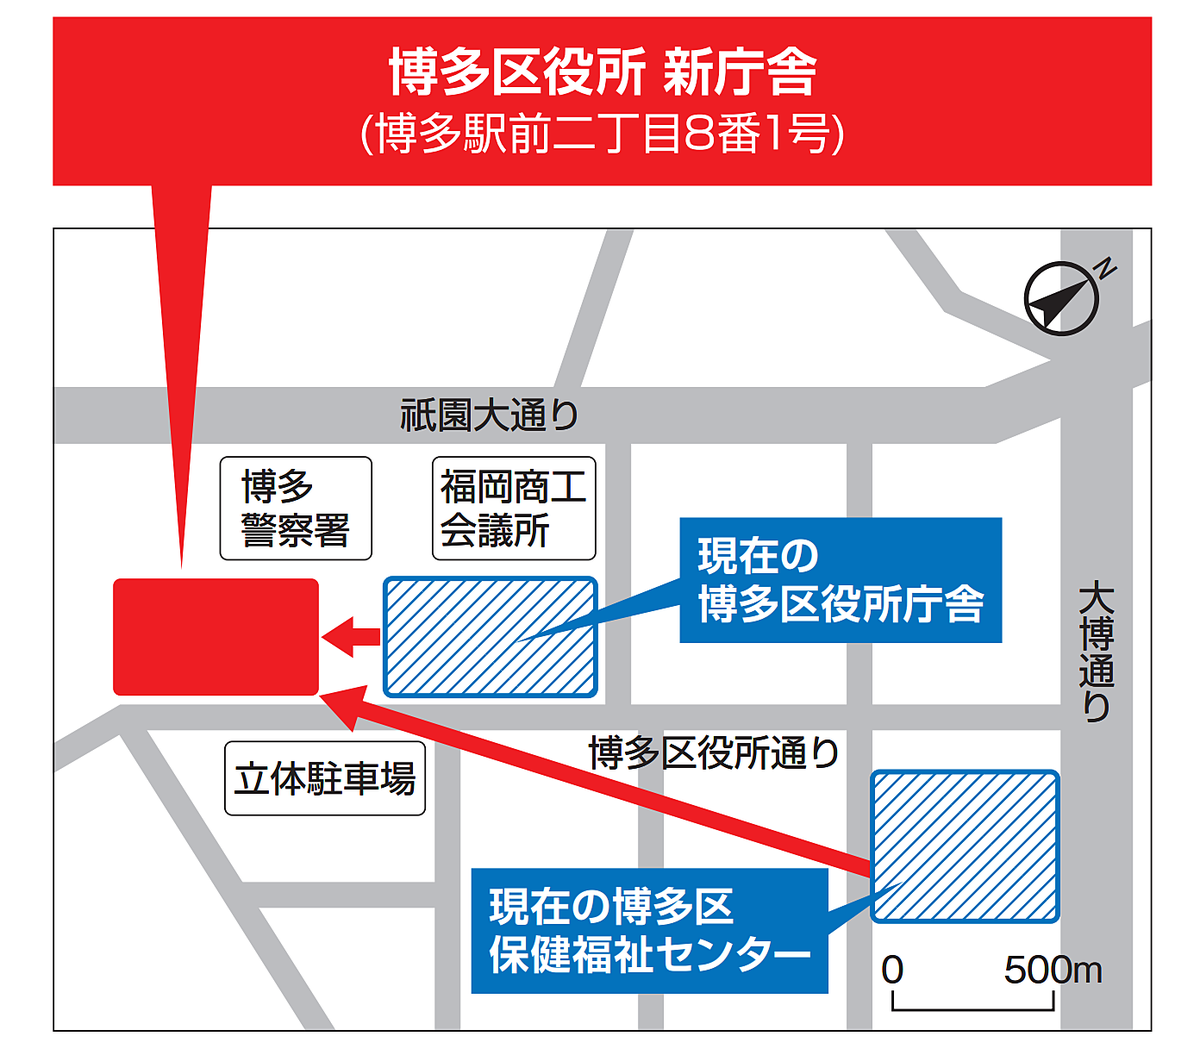 博多区役所の新庁舎の地図です